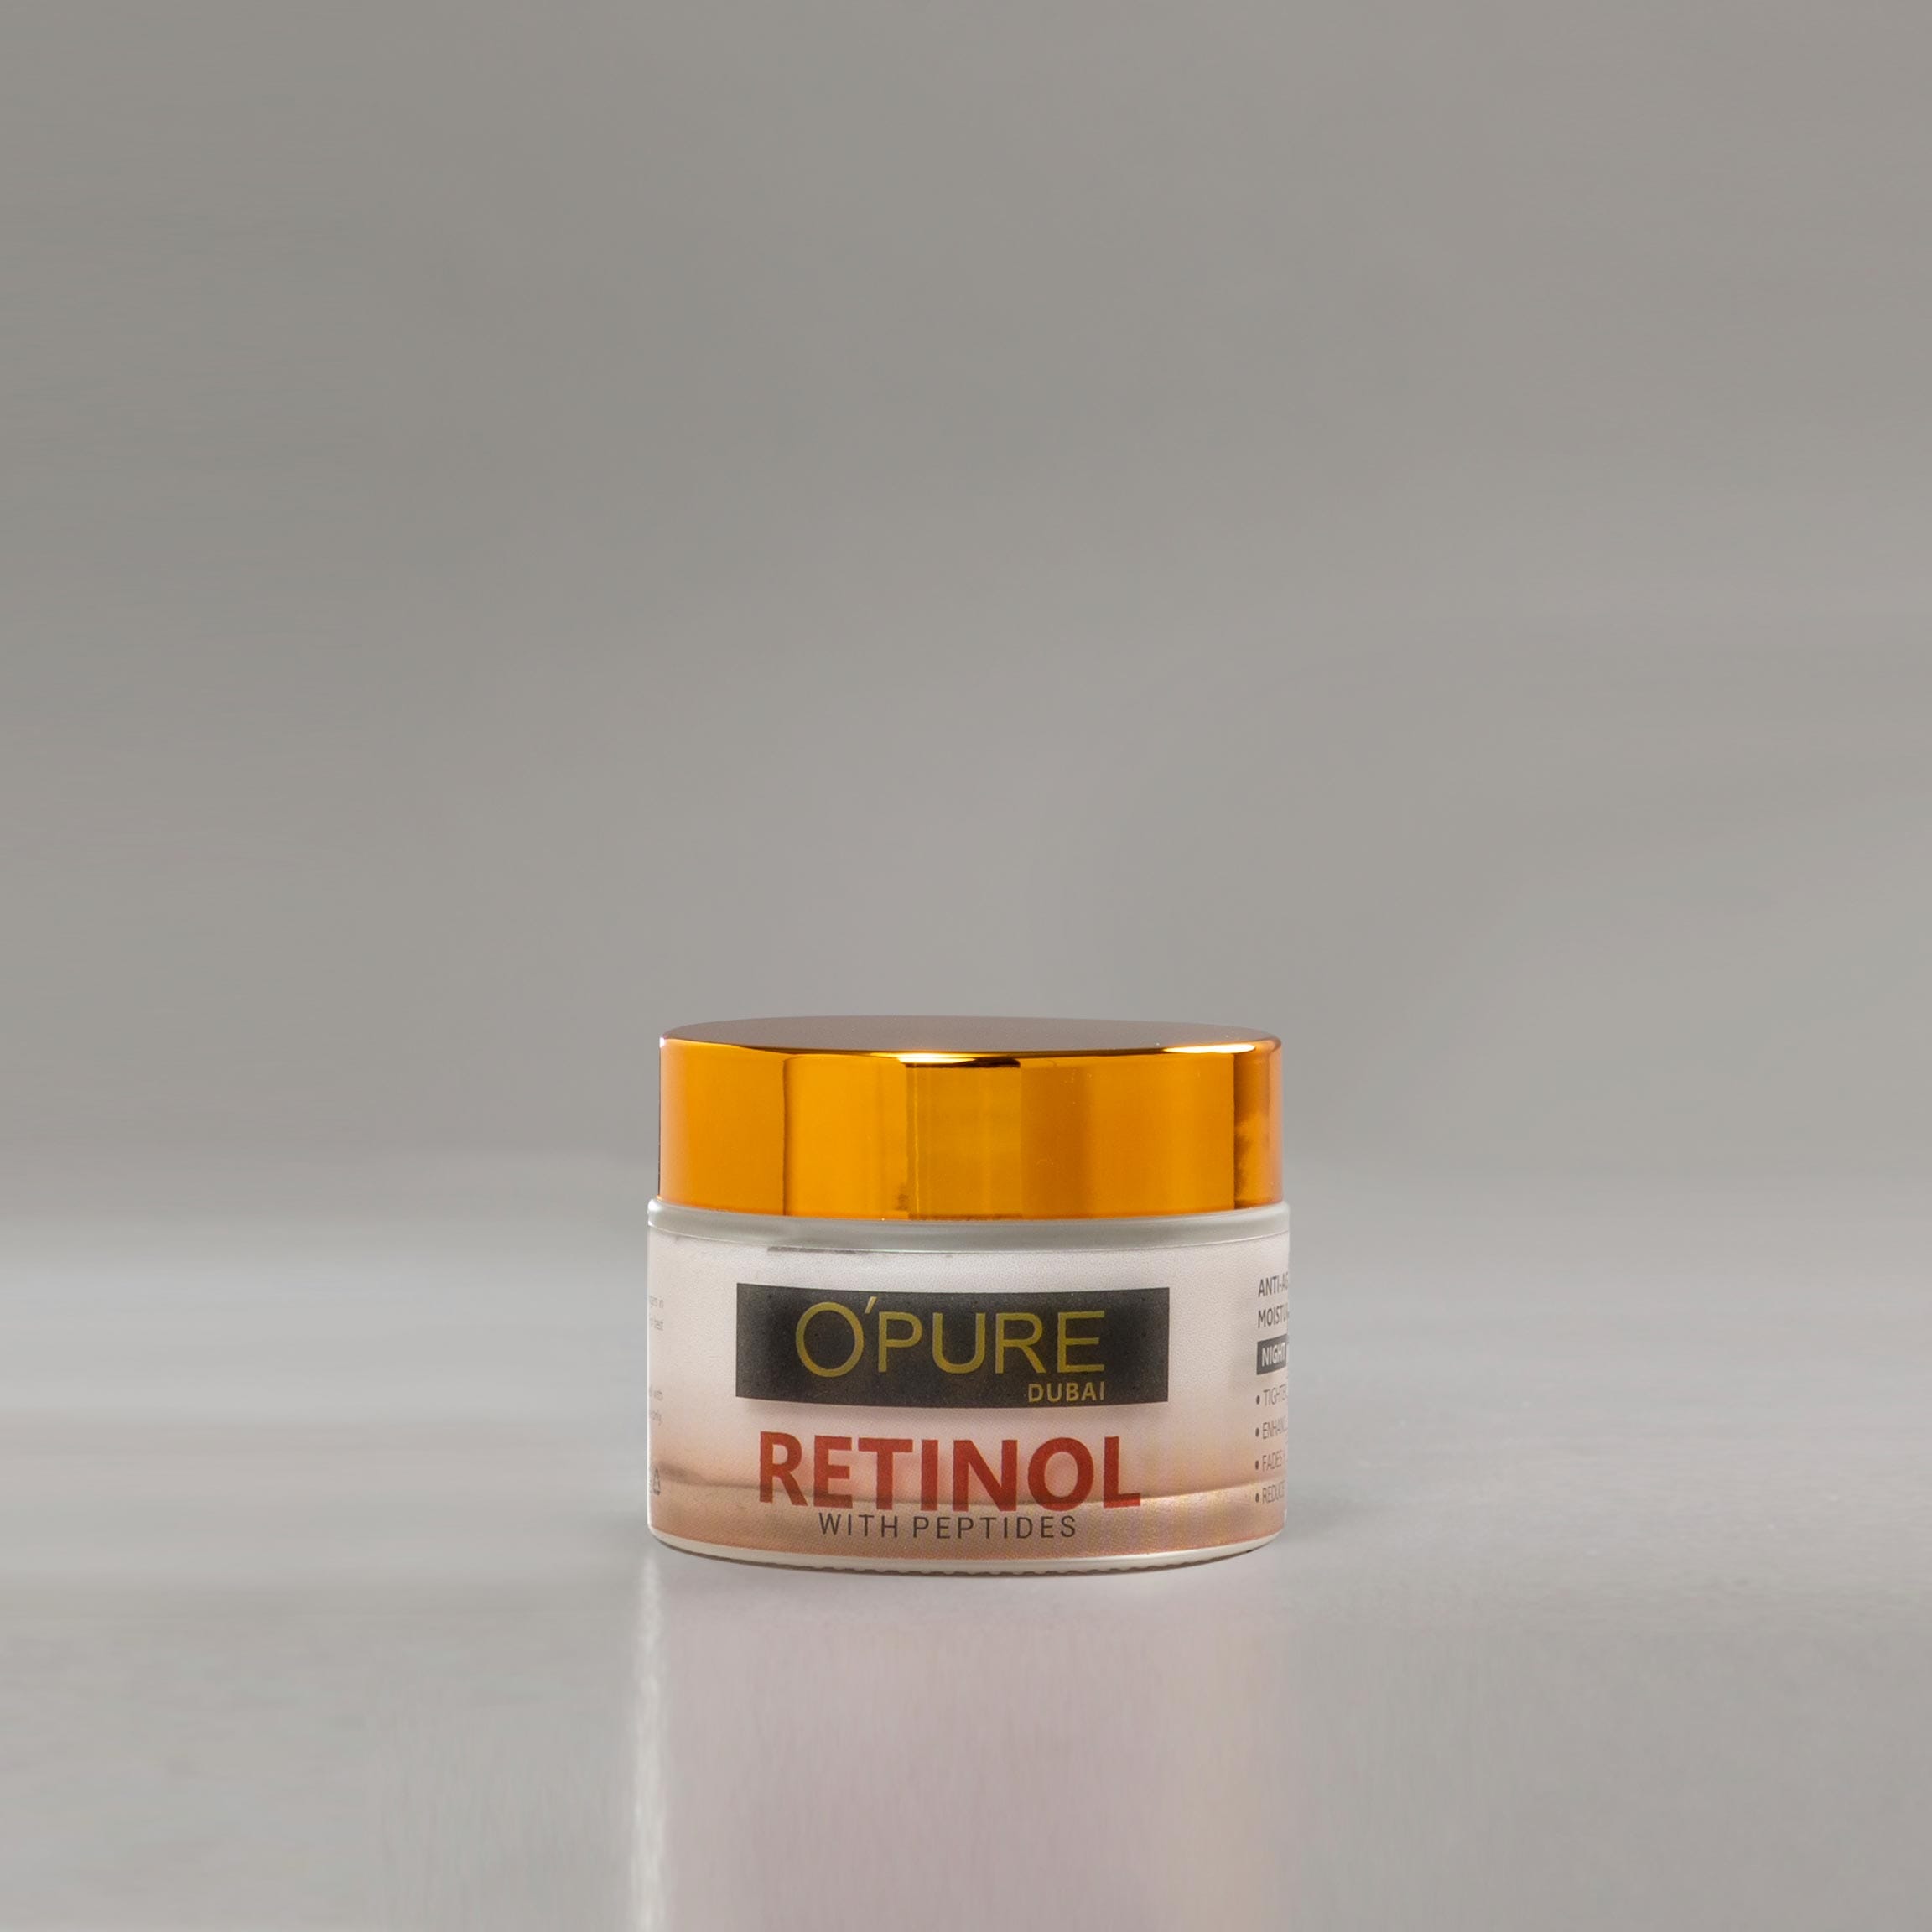 Retinol Cream Anti-Aging Anti-Wrinkle Moisturizer Previous product Next product Retinol Cream Anti-Aging Anti-Wrinkle Moisturizer